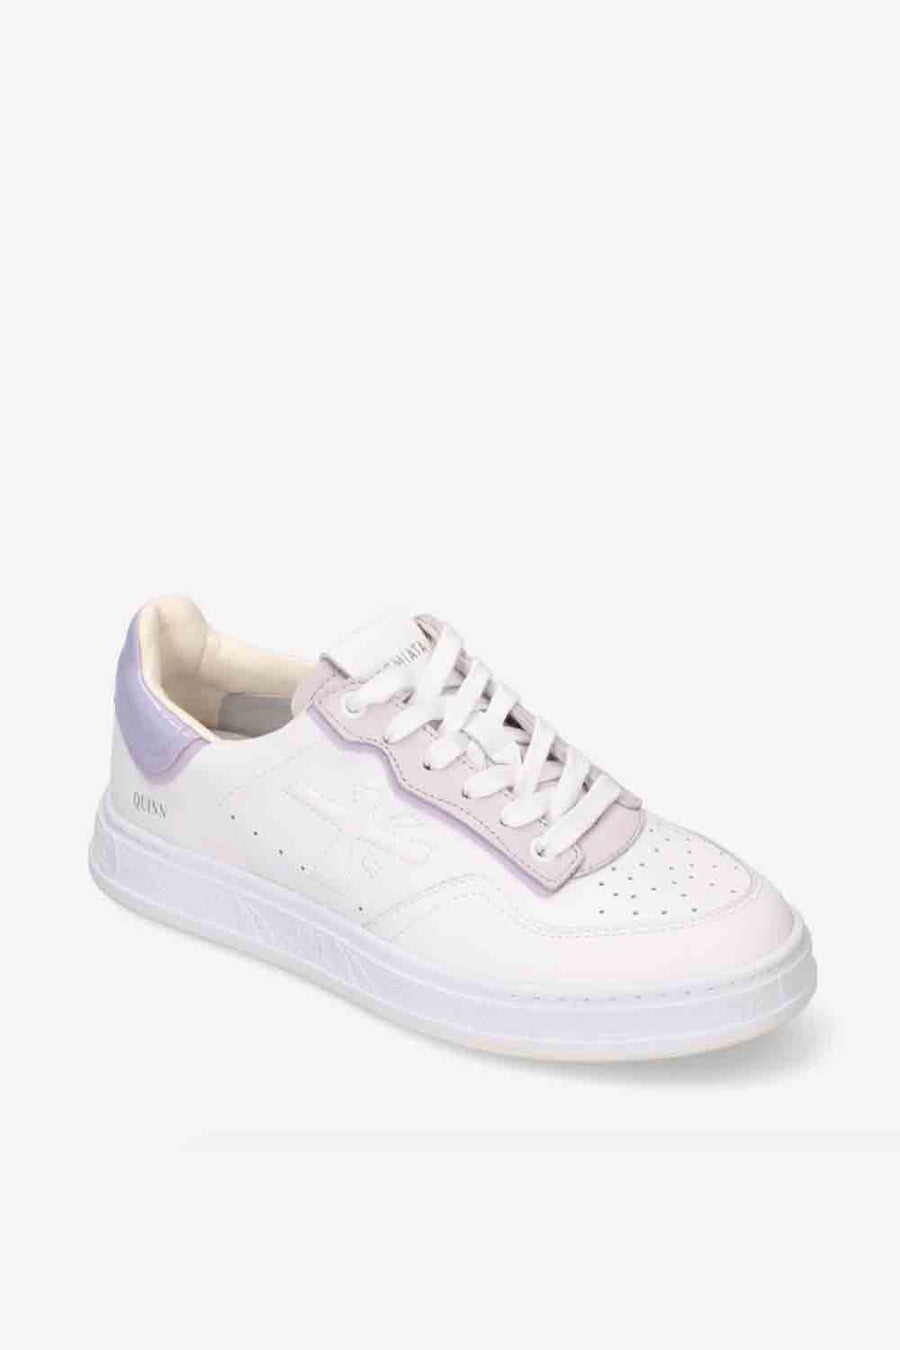 Sneakers Premiata color bianco e lilla quinnd 6322